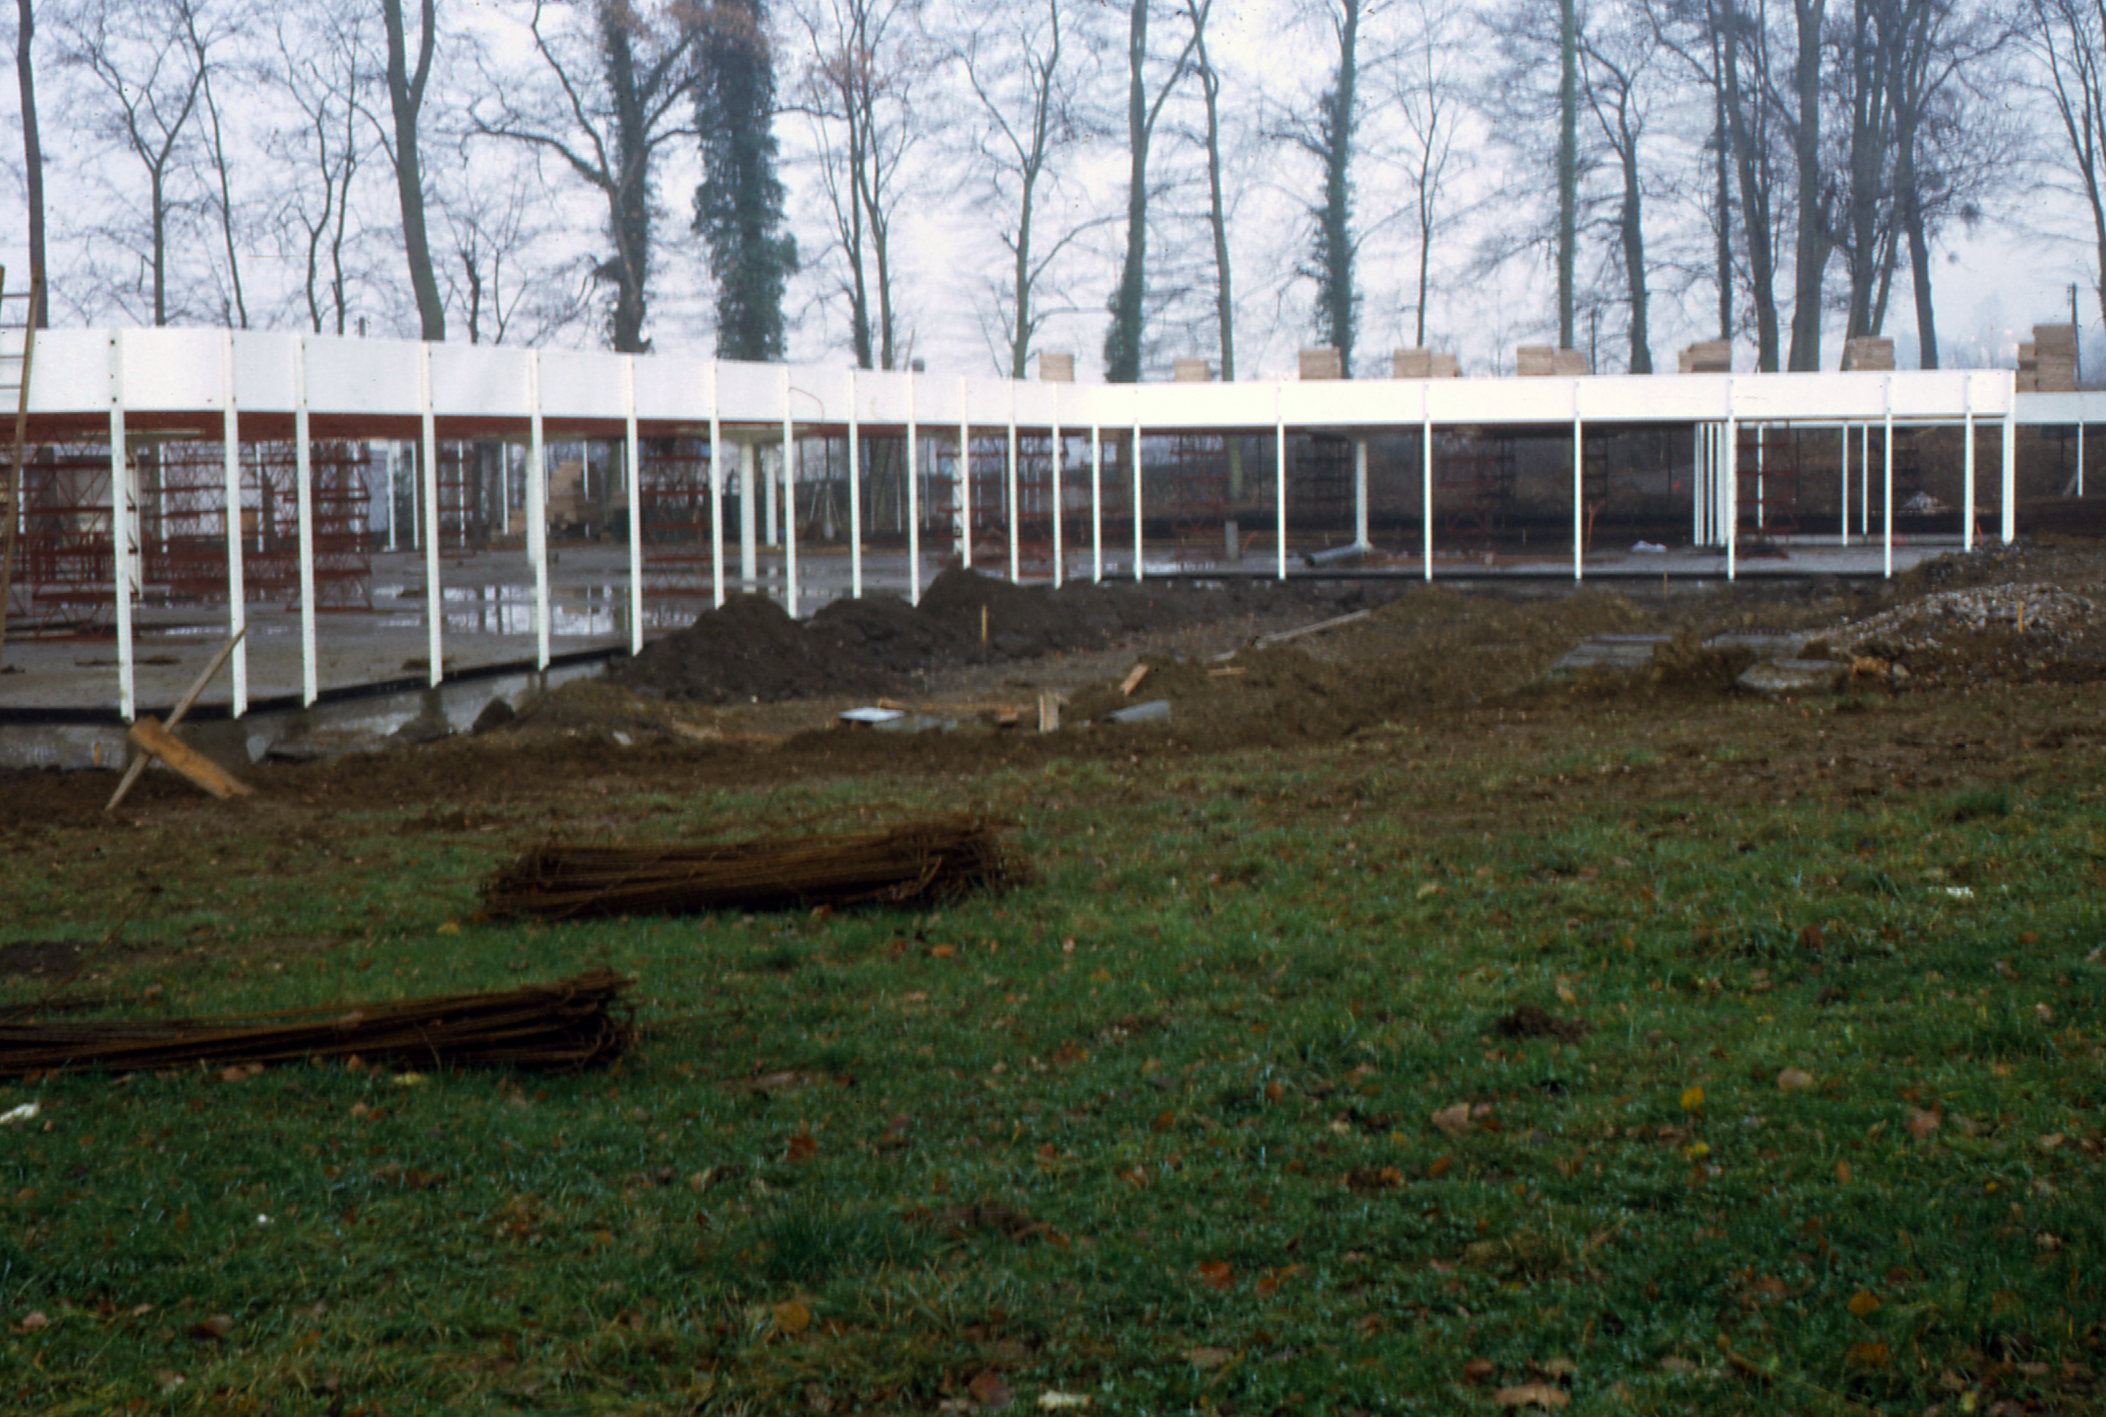 School of architecture, Villers-lès-Nancy, 1970 (architects J. Binoux, M. Folliasson). View of the building site.